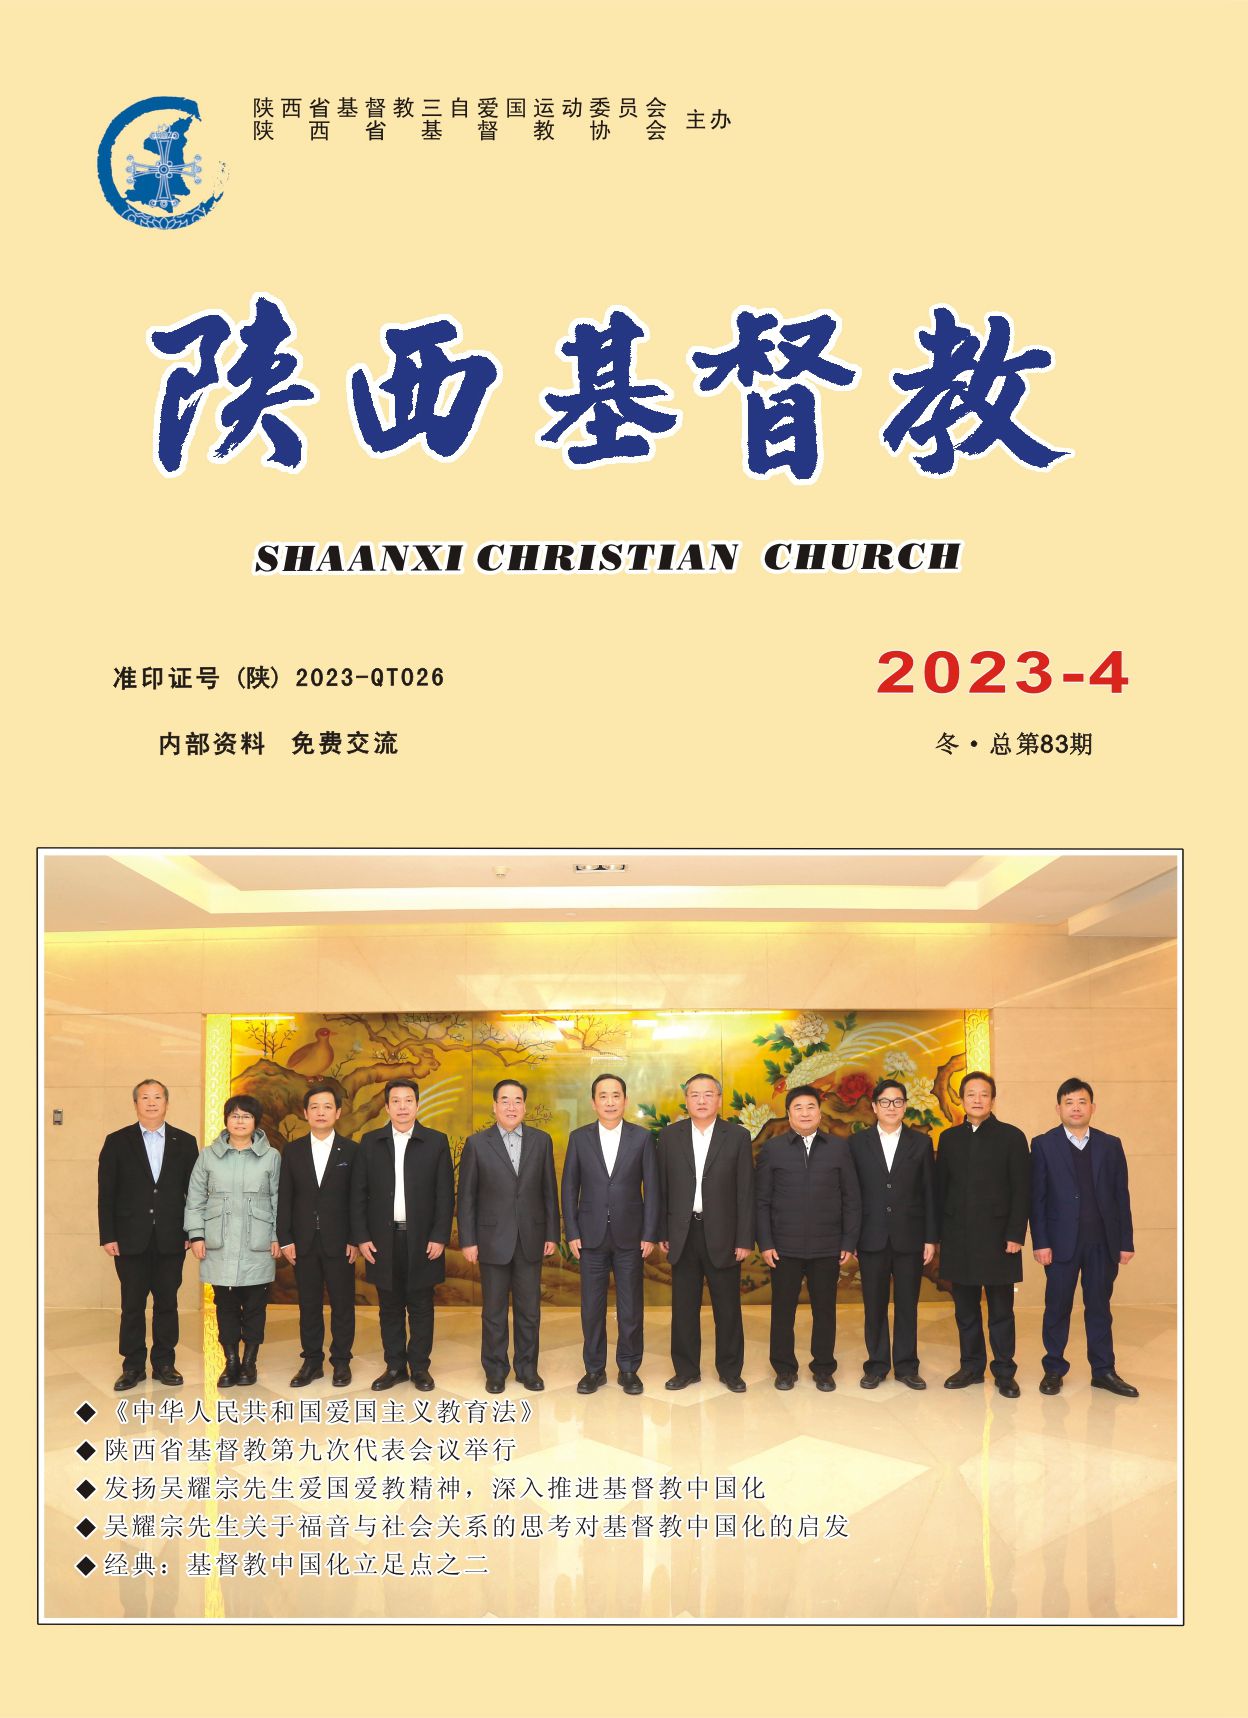 《陕西基督教》2023年第4期